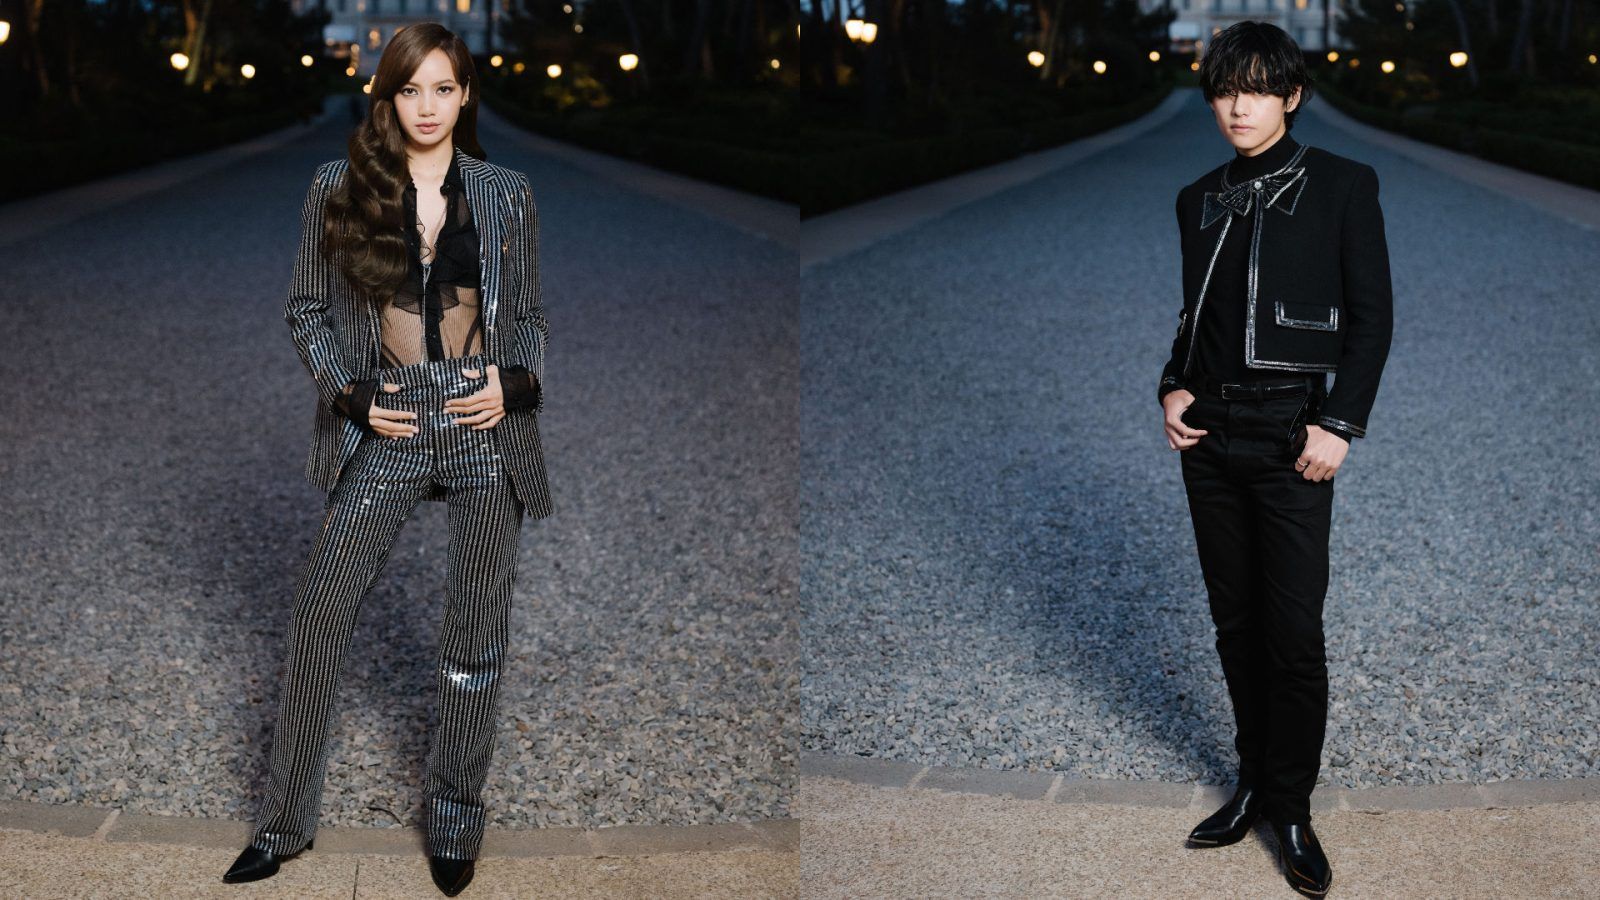 LISA, V & Park Bo-gum in Paris & Their Best Looks - Wonder